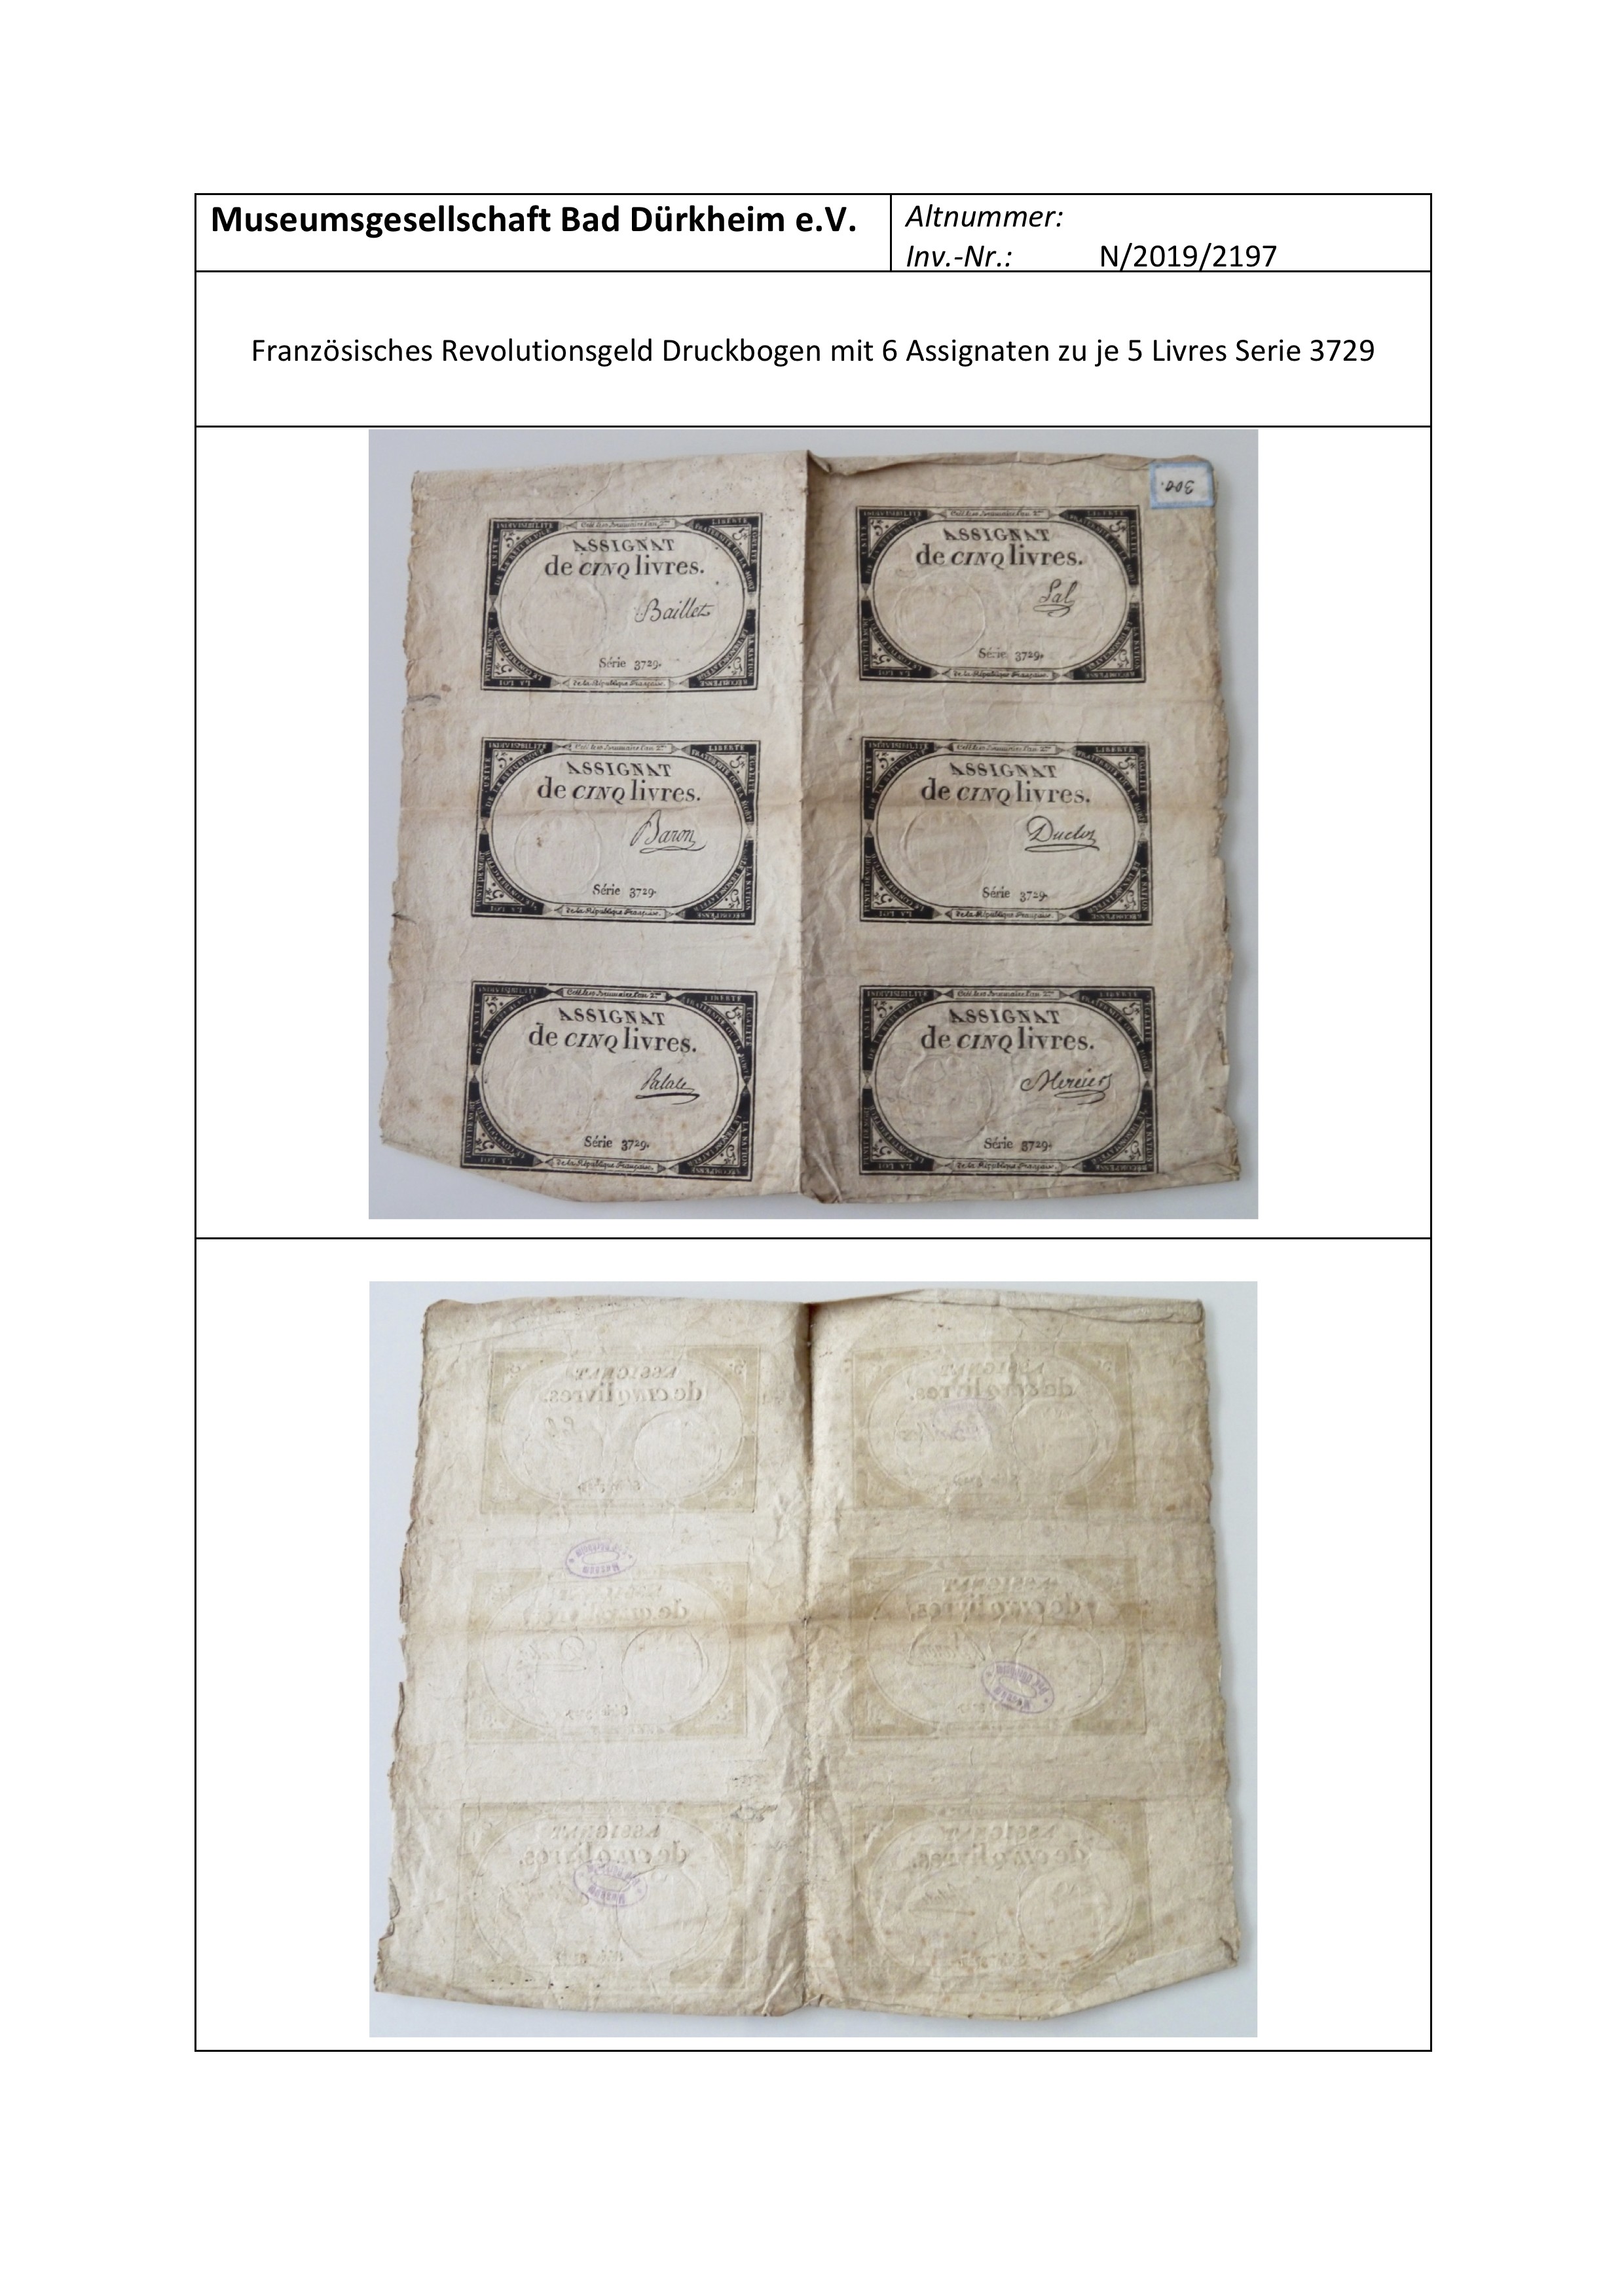 Notenportait Französisches Revolutionsgeld Druckbogen mit 6 Assignaten zu je 5 Livres  Serie 3729 (Museumsgesellschaft Bad Dürkheim e.V. CC BY-NC-SA)